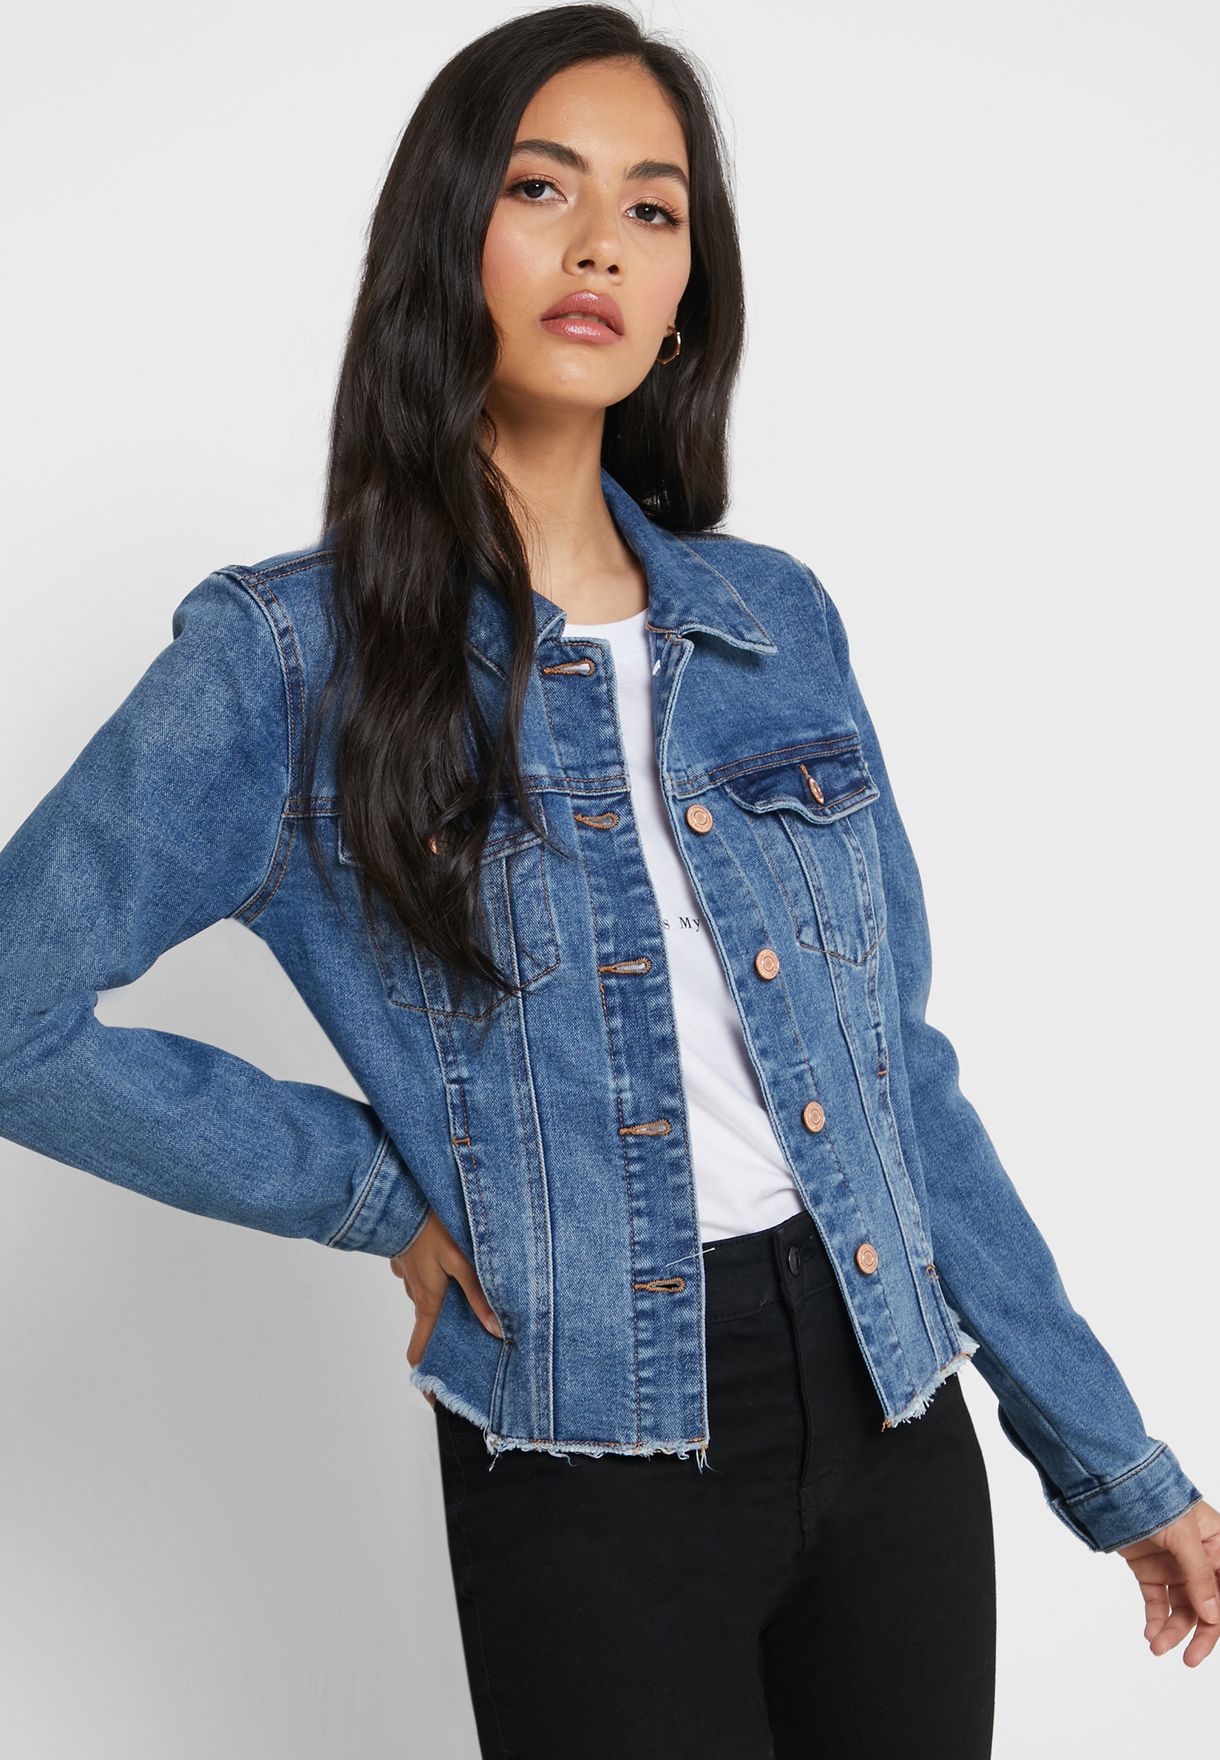 rhinestone embellished jean jacket